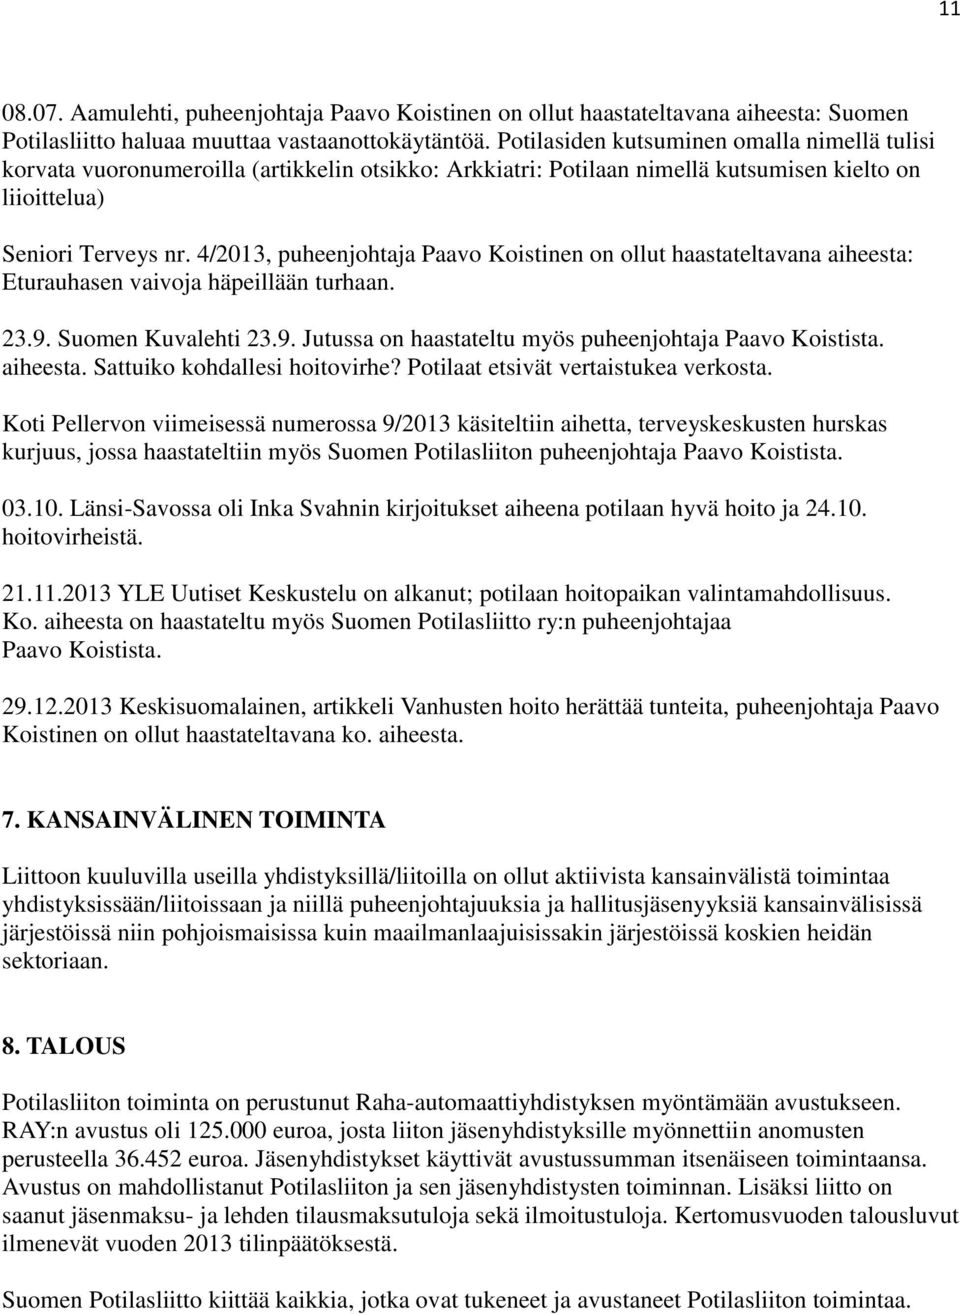 4/2013, puheenjohtaja Paavo Koistinen on ollut haastateltavana aiheesta: Eturauhasen vaivoja häpeillään turhaan. 23.9. Suomen Kuvalehti 23.9. Jutussa on haastateltu myös puheenjohtaja Paavo Koistista.